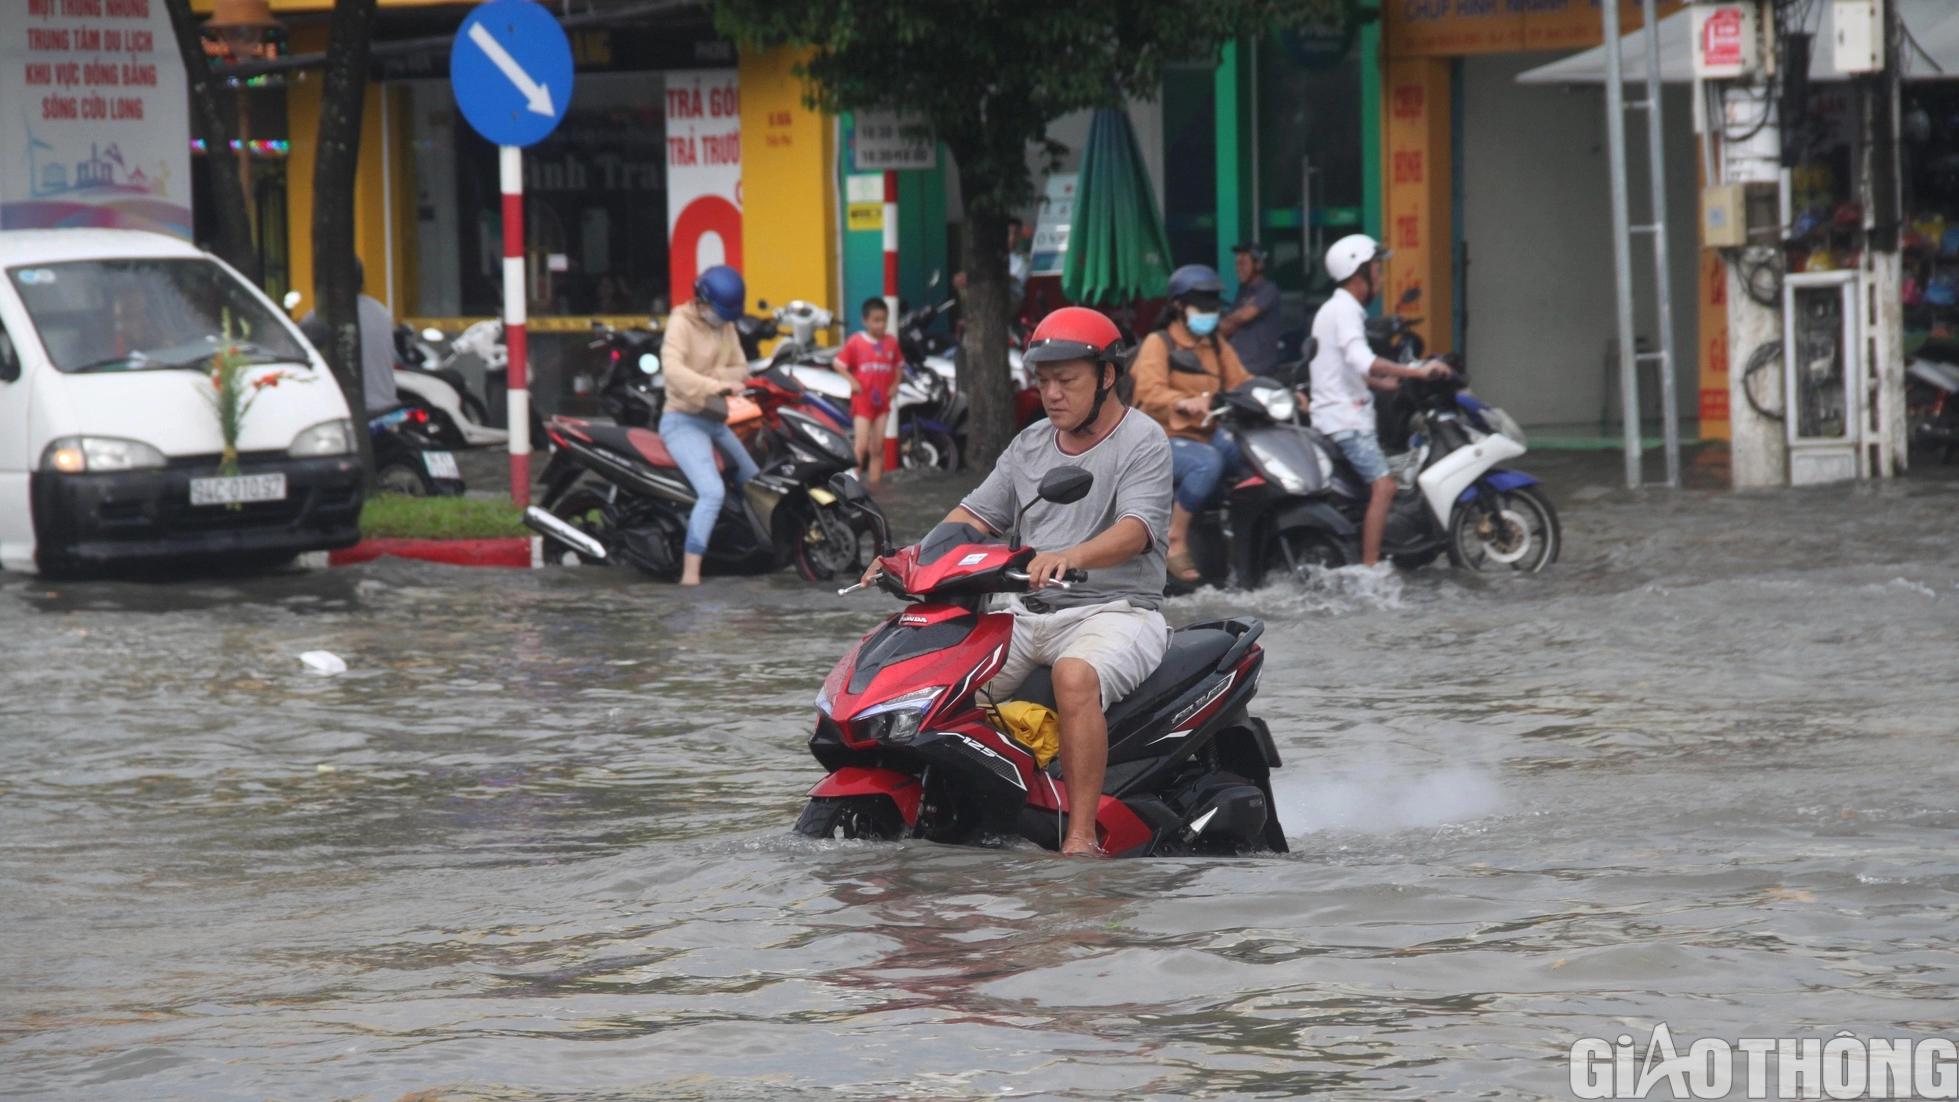 Người dân Bạc Liêu bì bõm dẫn xe lội nước sau cơn mưa lớn kéo dài - Ảnh 2.